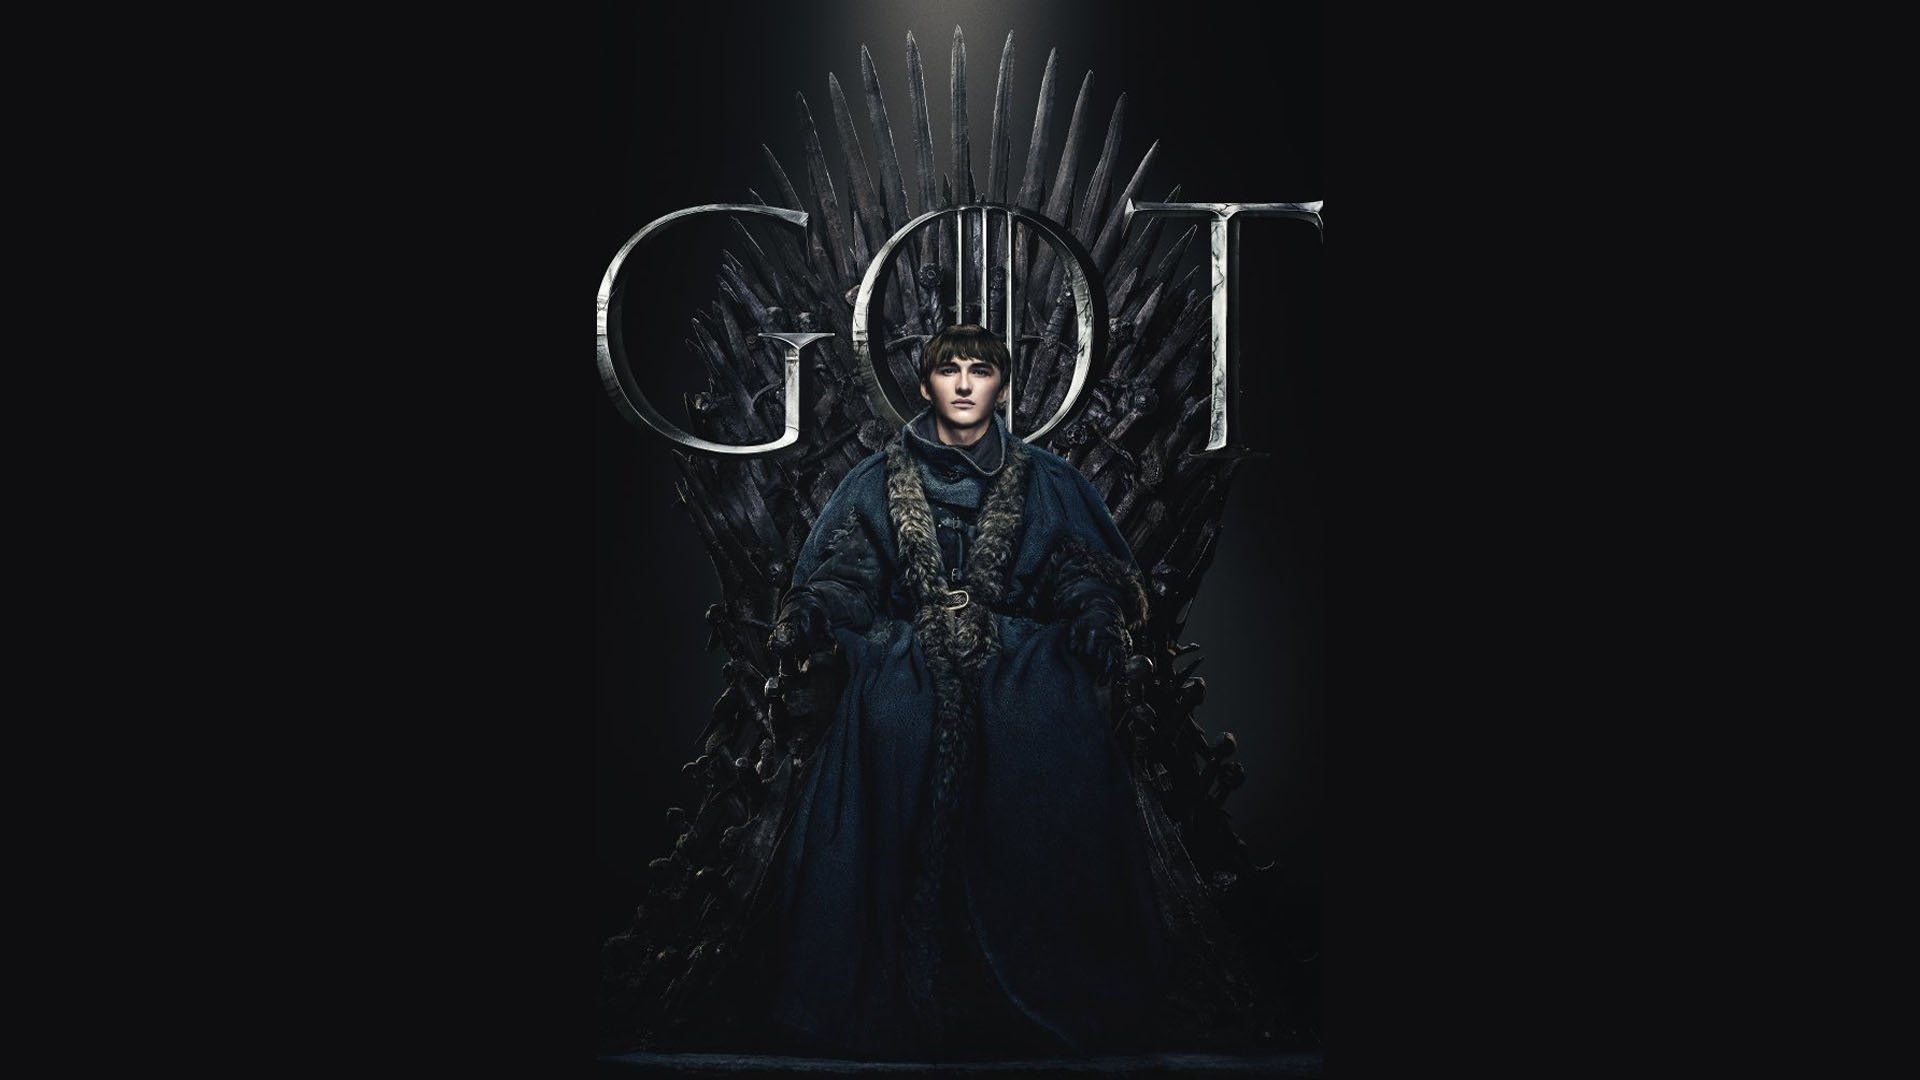 Deauville 2019 : L'intégralité de Game of Thrones sera diffusé par le Festival